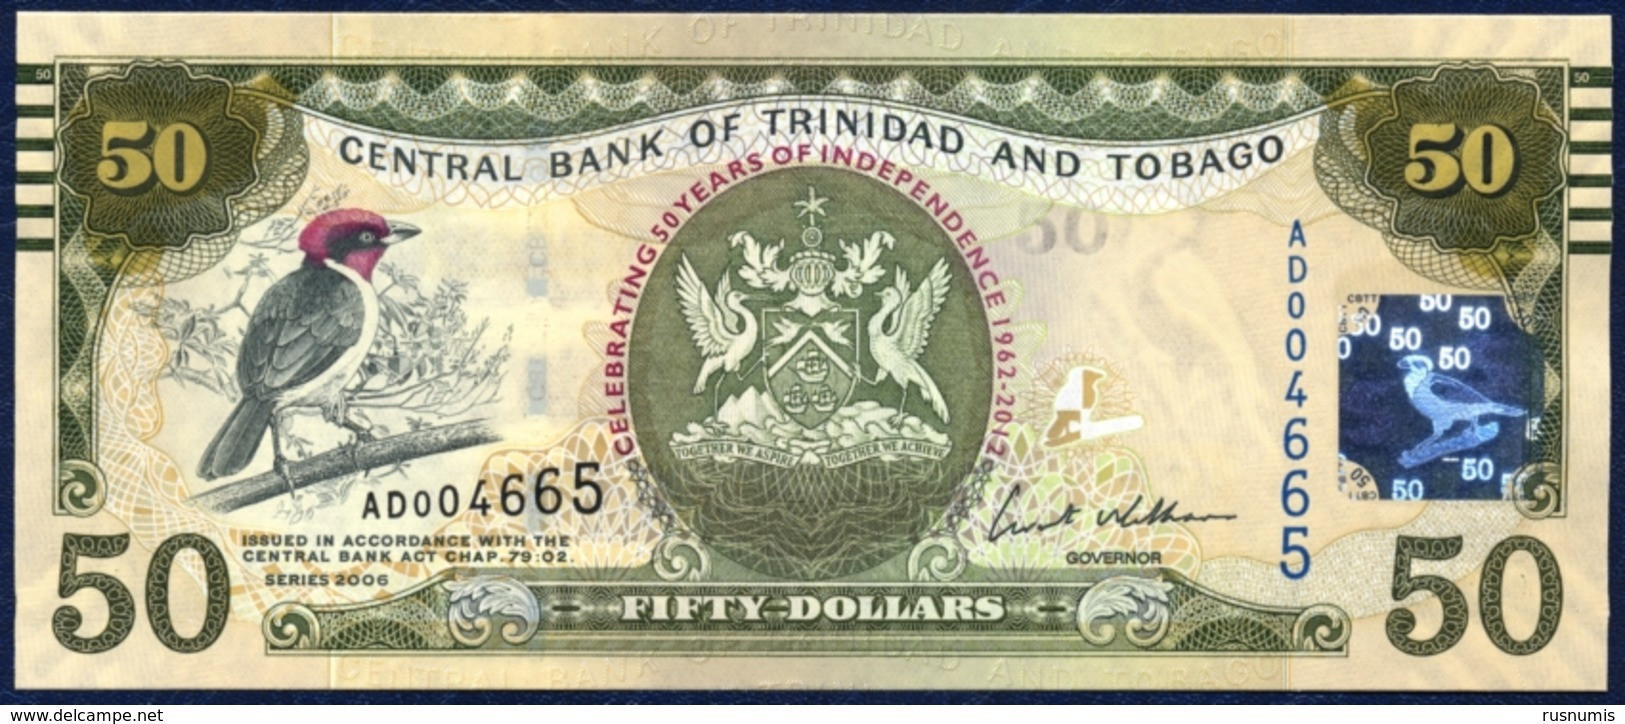 TRINIDAD AND TOBAGO 50 DOLLARS P-53 COMMEMORATIVE 50th ANNIVERSARY OF INDEPENDENCE CARDINAL BIRD  2006 / 2012 UNC - Trindad & Tobago